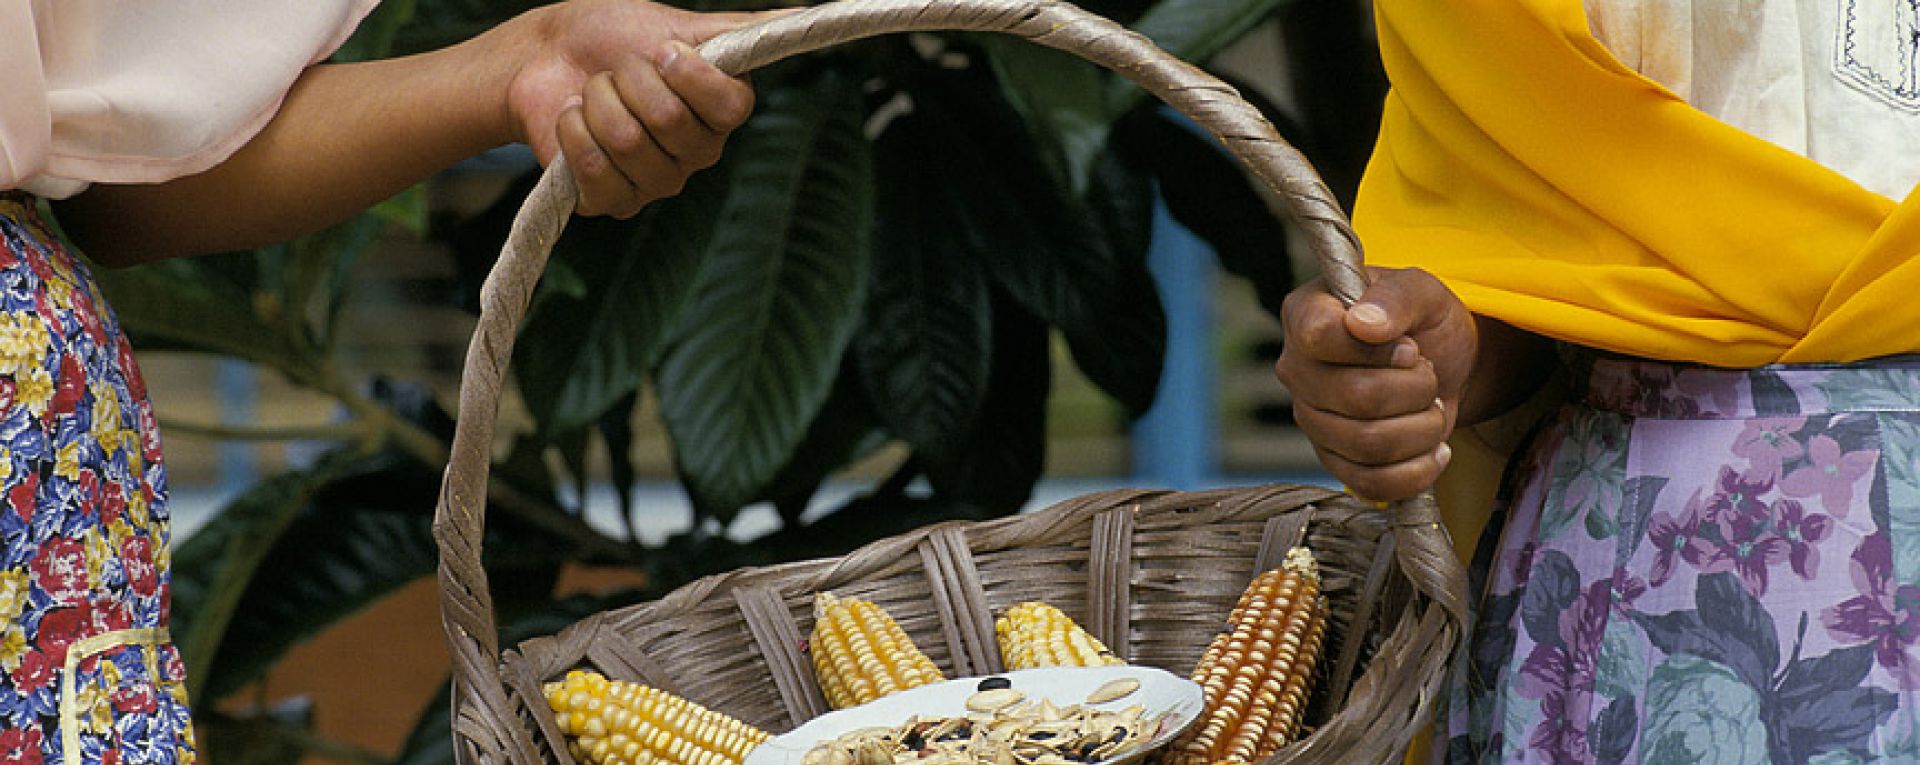 Basket of corn cobs